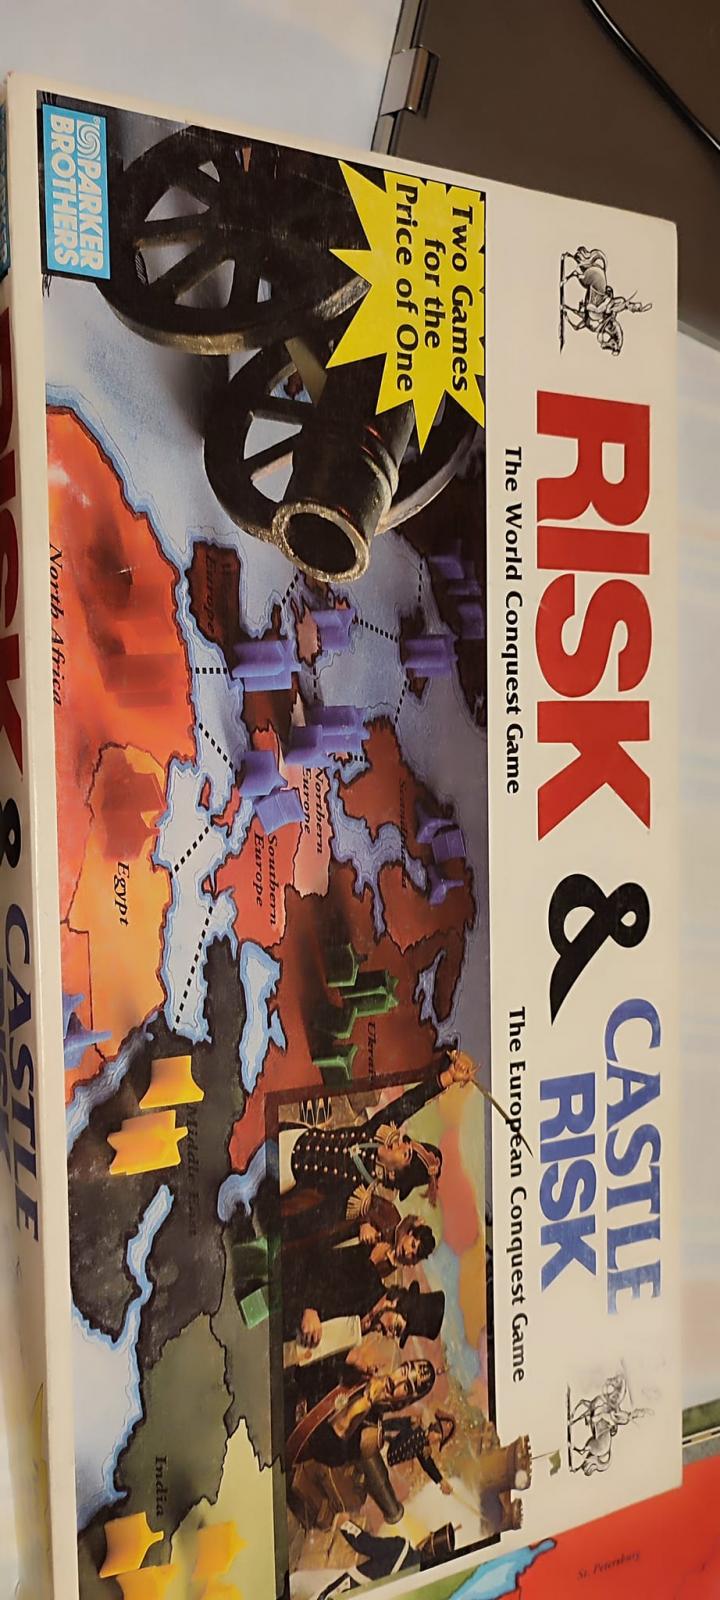 Nome:   risk & castle risk 1.jpg
Visite:  310
Grandezza:  160.0 KB